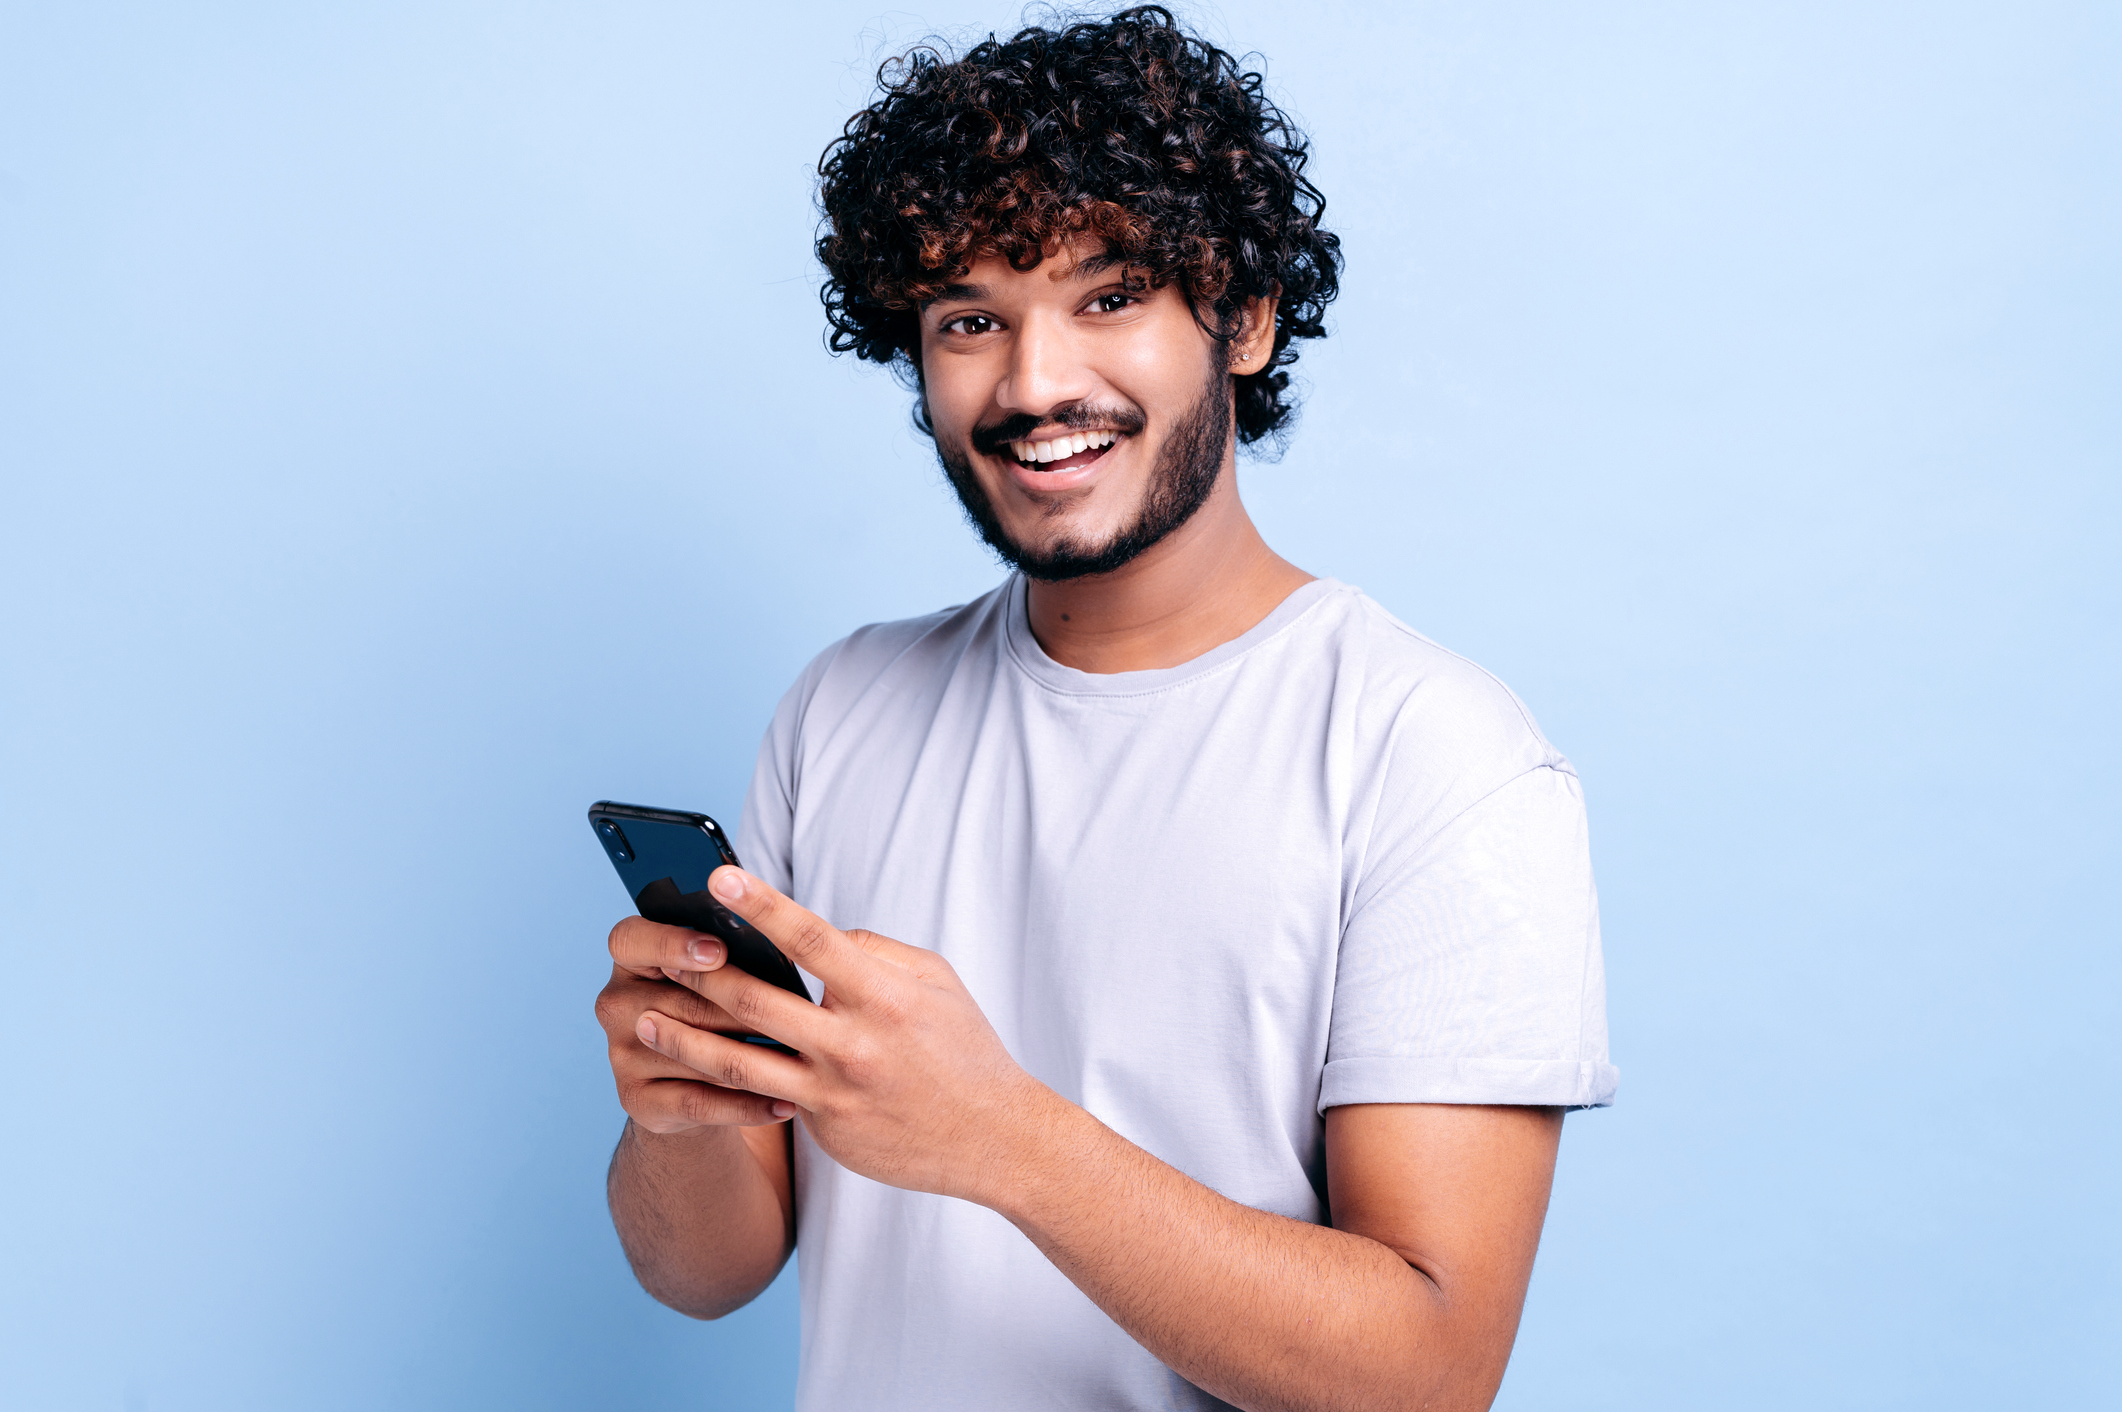 homem de jovem de cabelo cacheado e barba sorrindo com um smartphone nas mãos